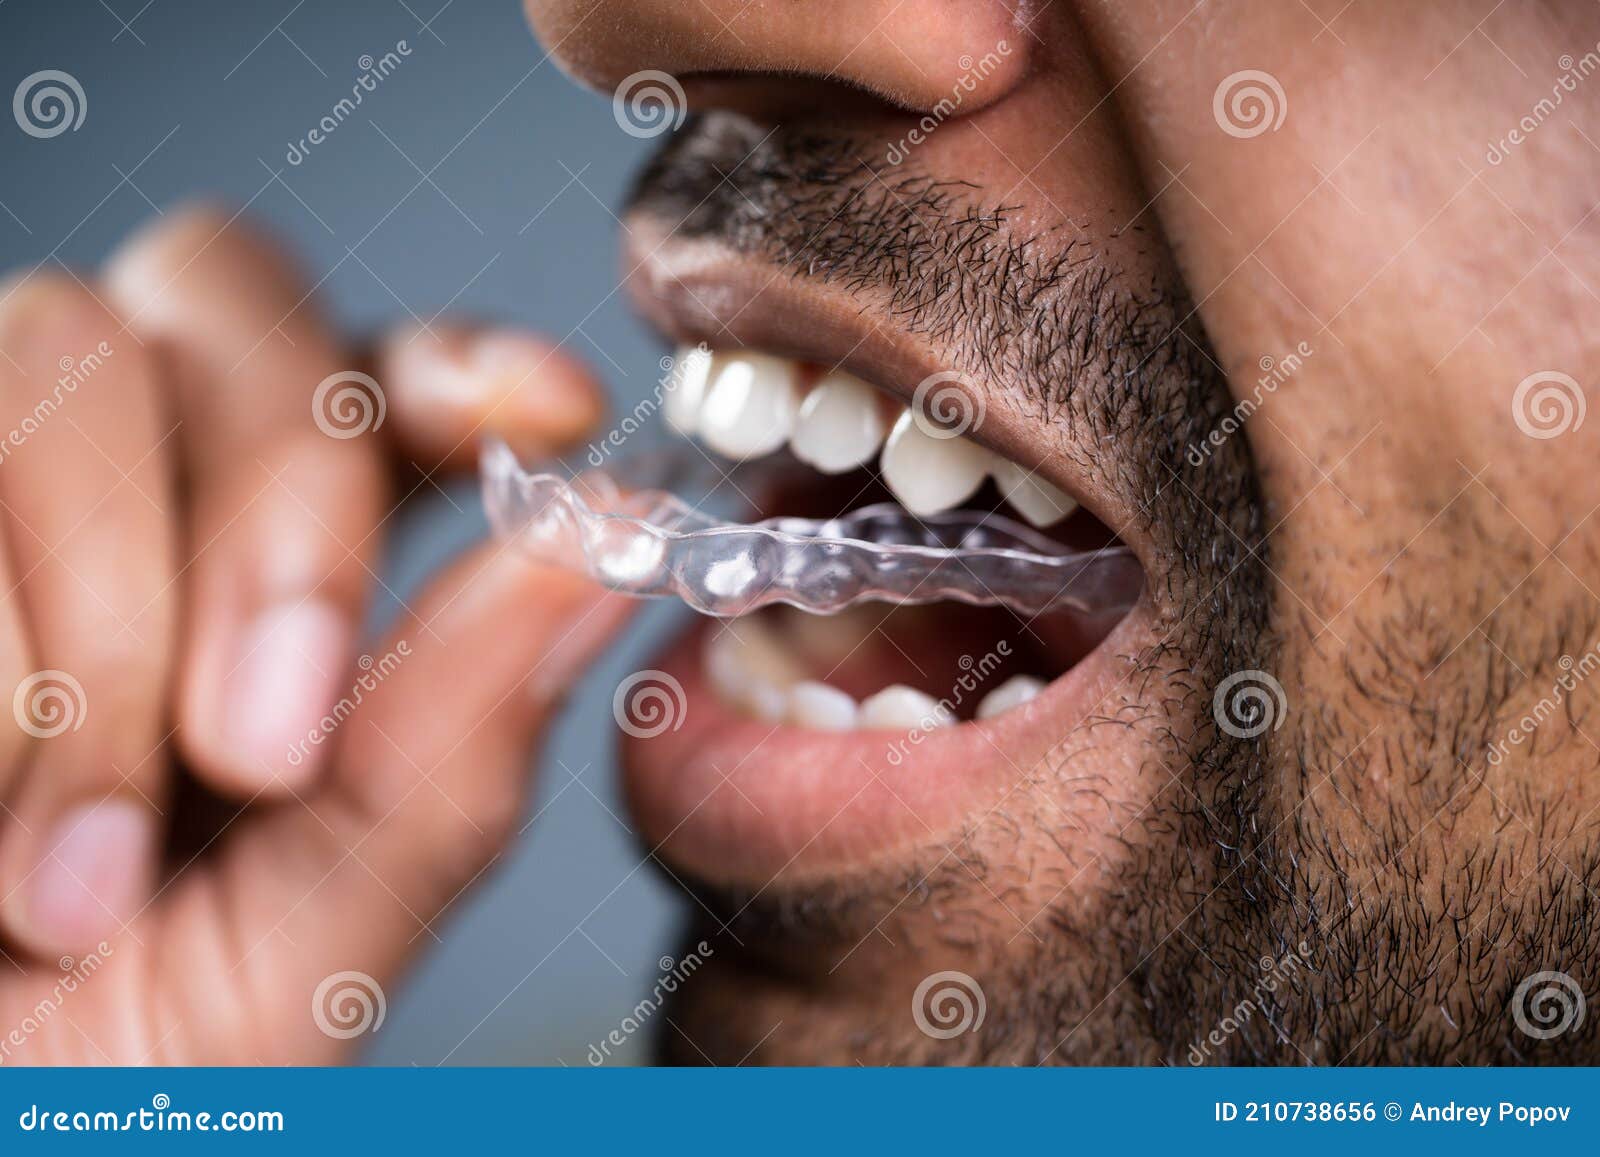 man putting transparent aligner in teeth